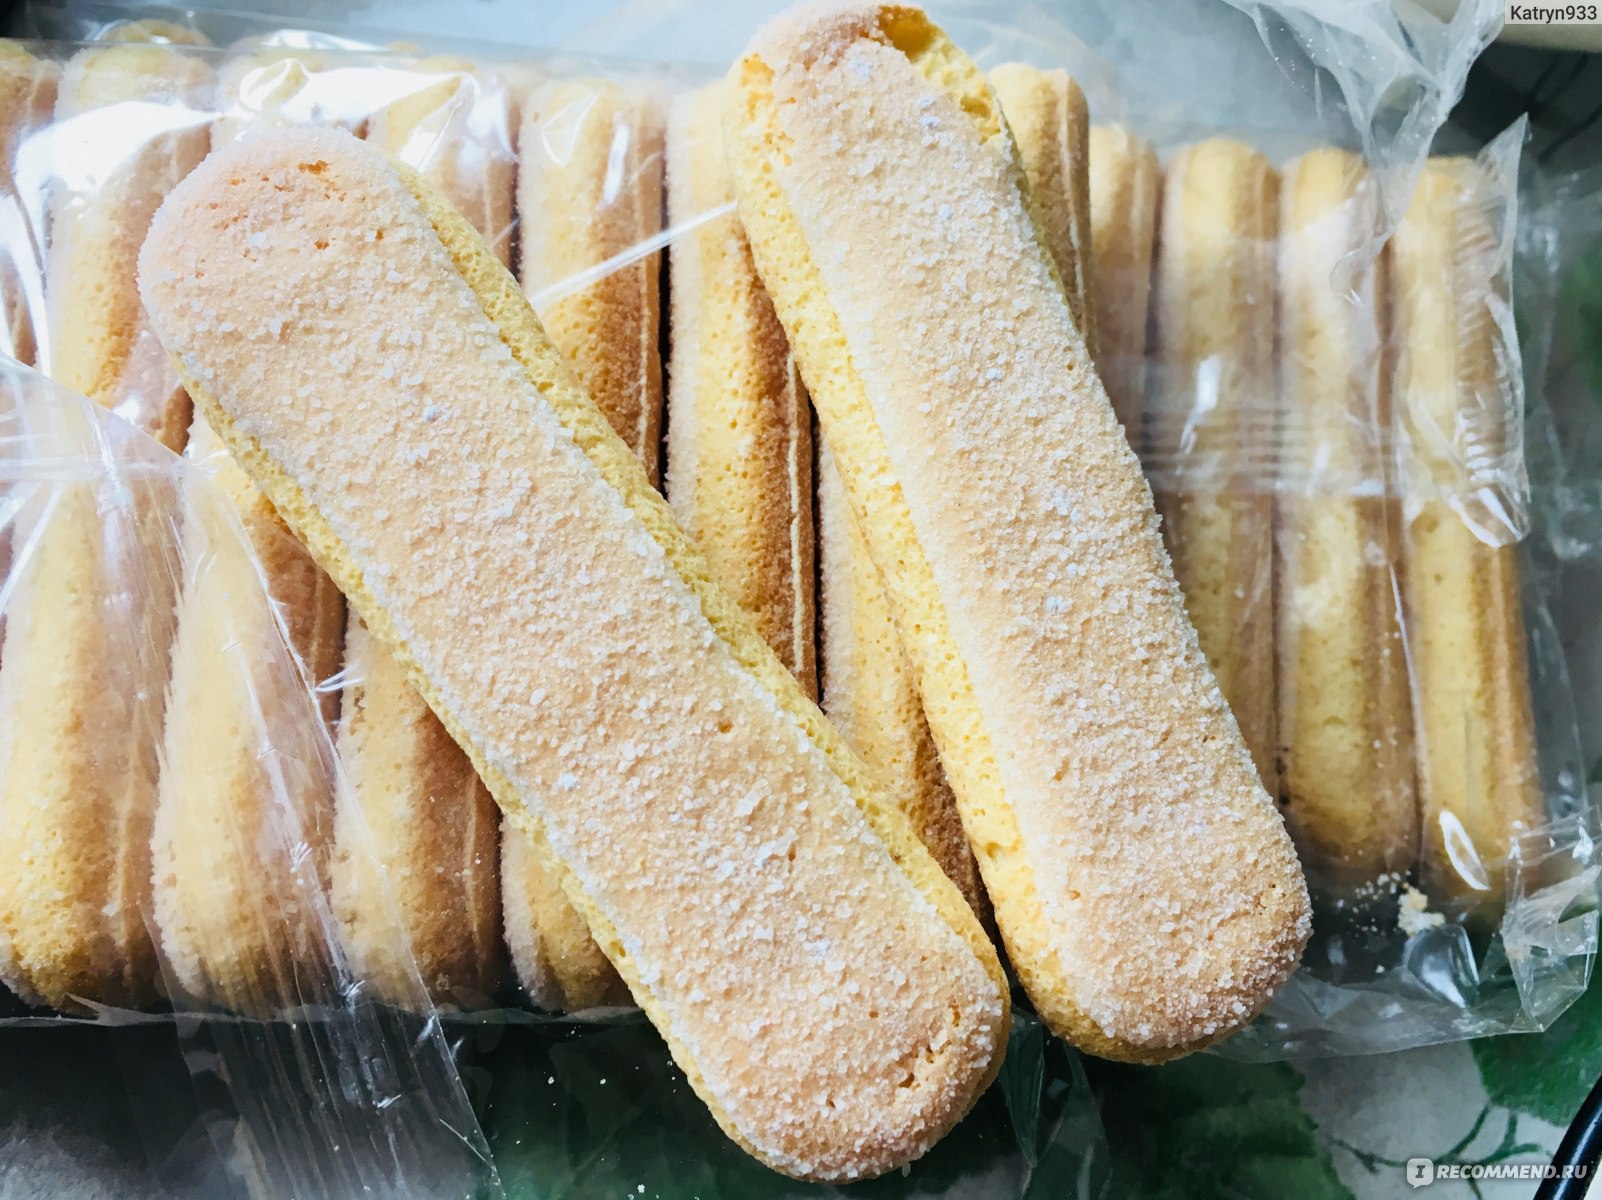 Печенье для тирамису купить. Печенье савоярди. Печенье савоярди 400 г. Bonomi. Тирамису с печеньем савоярди. Печ Bonomi Biha савоярди сдоб сдобн 400г.